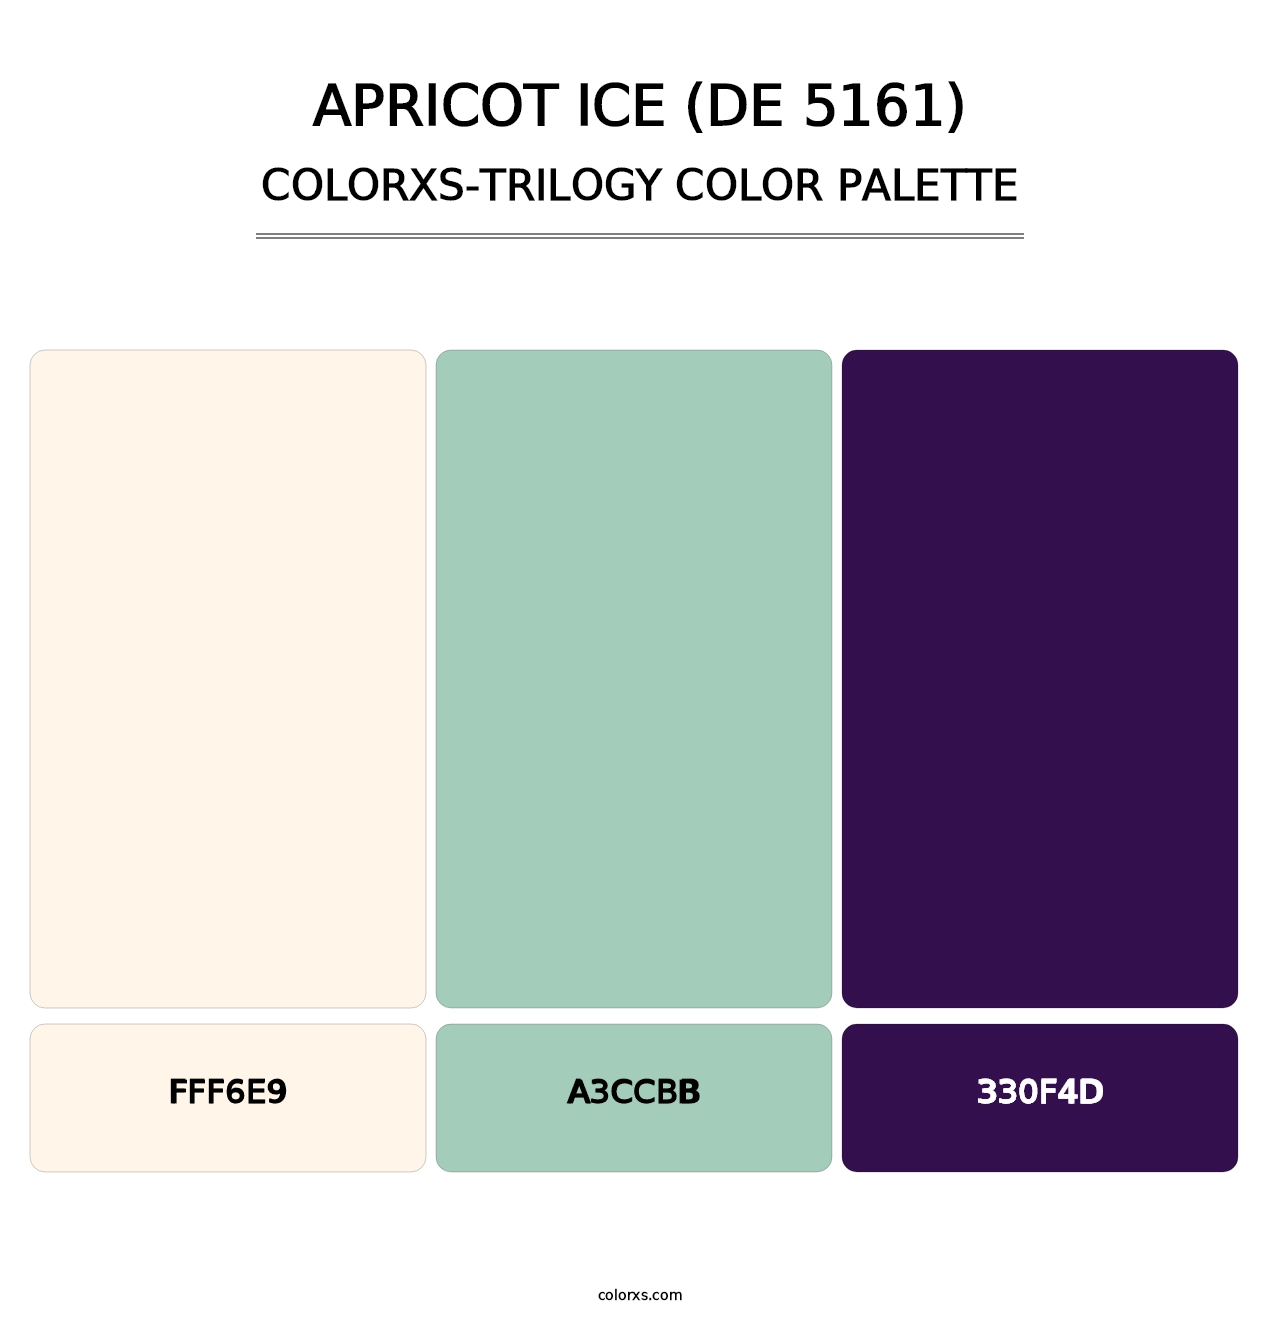 Apricot Ice (DE 5161) - Colorxs Trilogy Palette